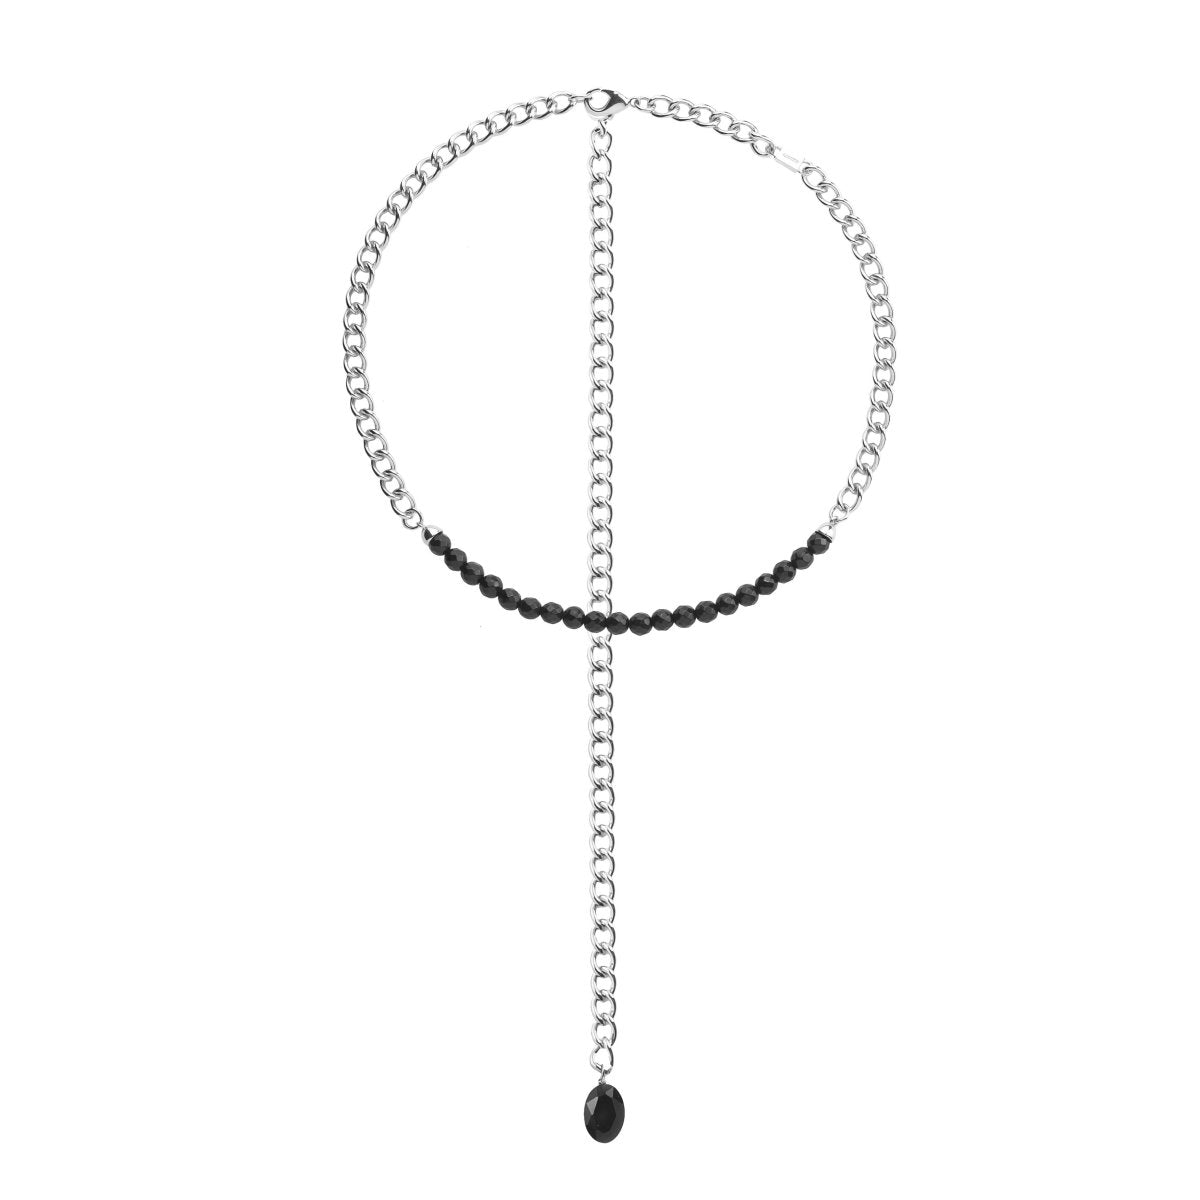 The OG 4-in-1 Necklace and Bracelet, Silver | C.J.ROCKER